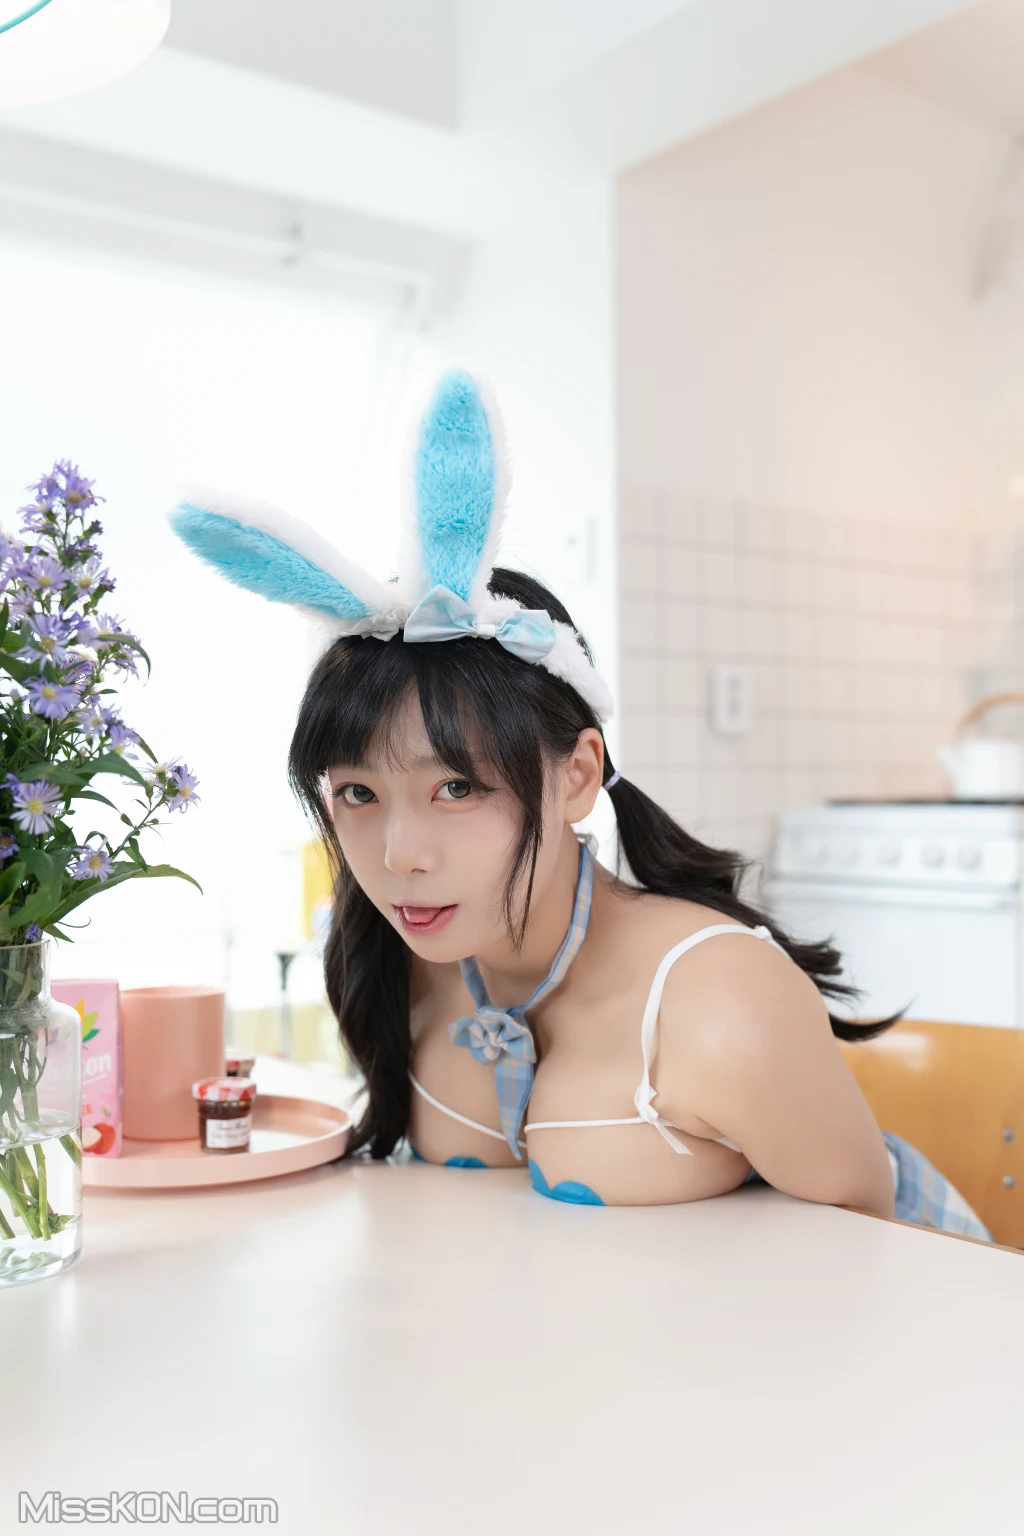 Maruemon (마루에몽): Bunny (87 photos)